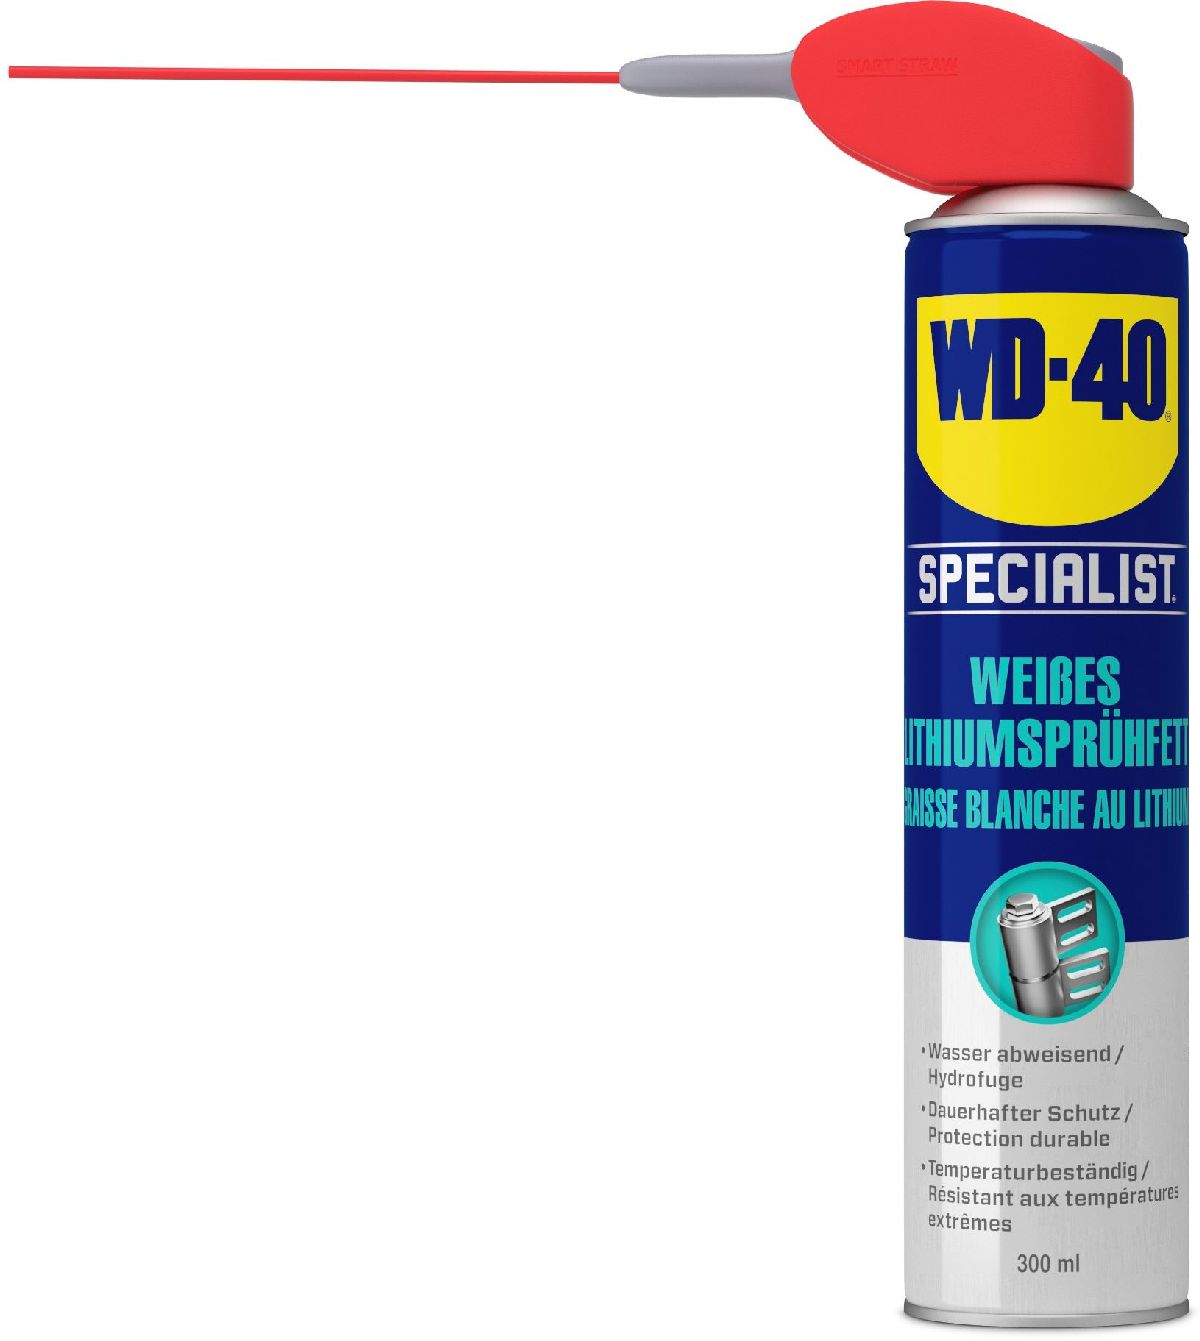 WD-40 Specialist Weisses Lithiumsprhfett 300ml